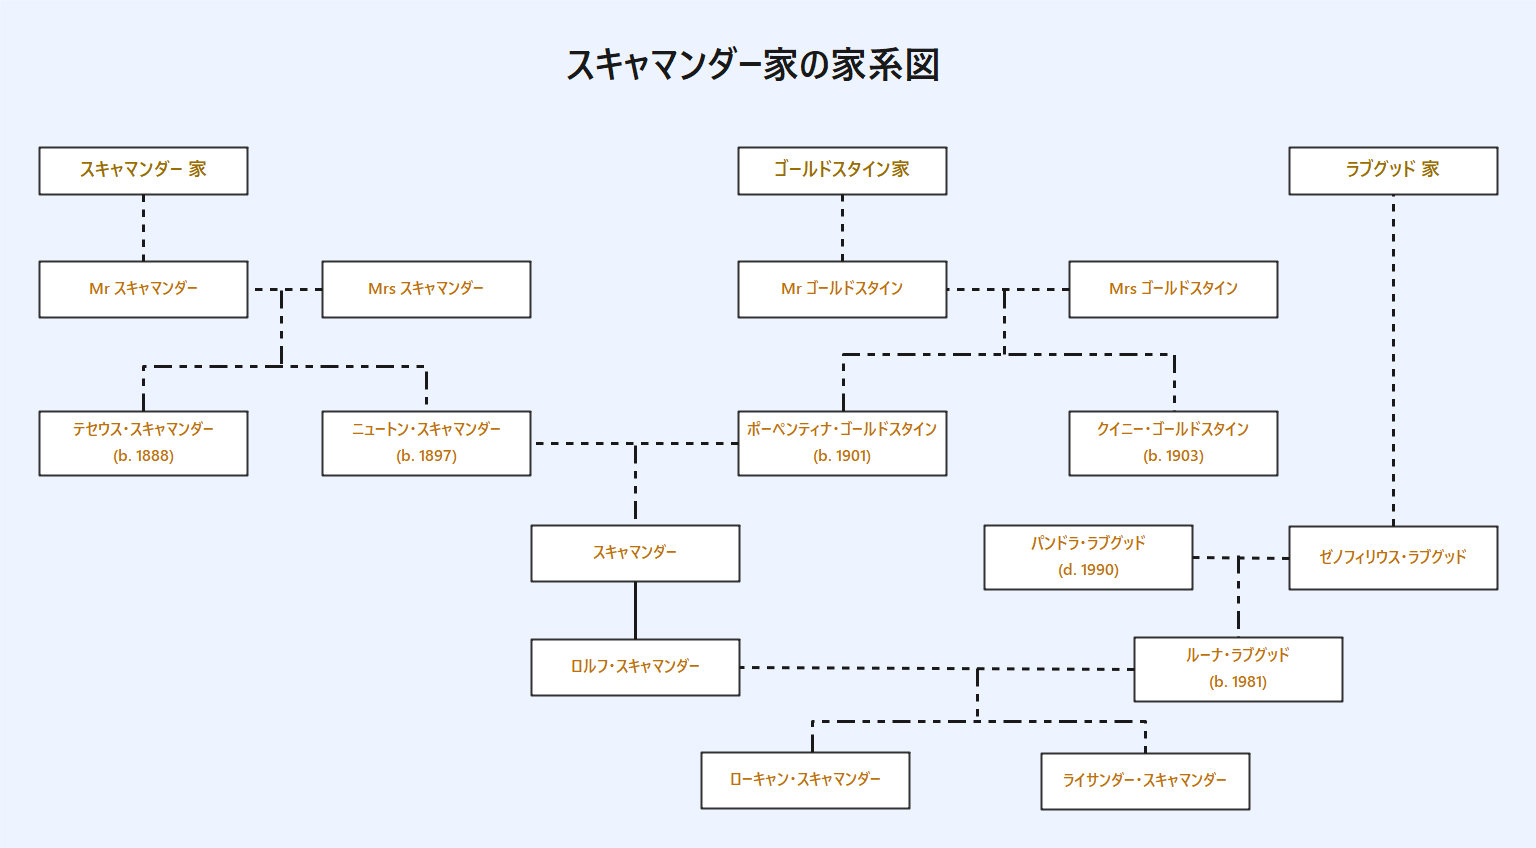 スキャマンダー家の家系図